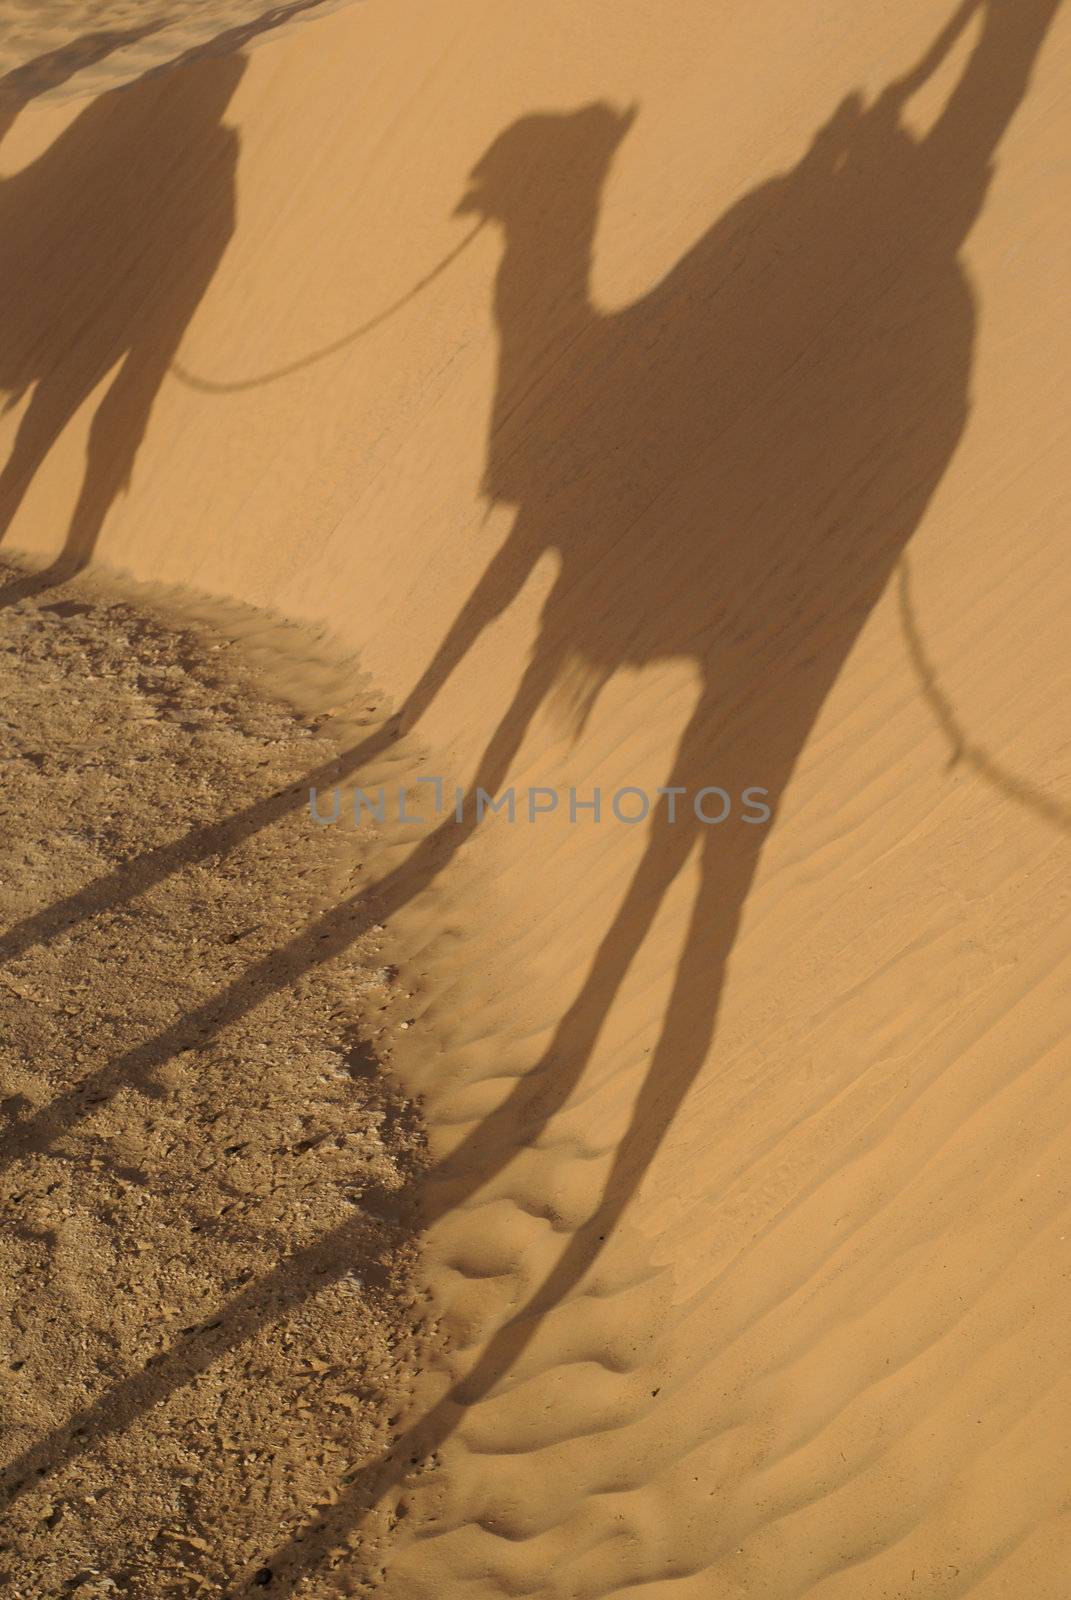 Dromedary in Sahara by mimocas29